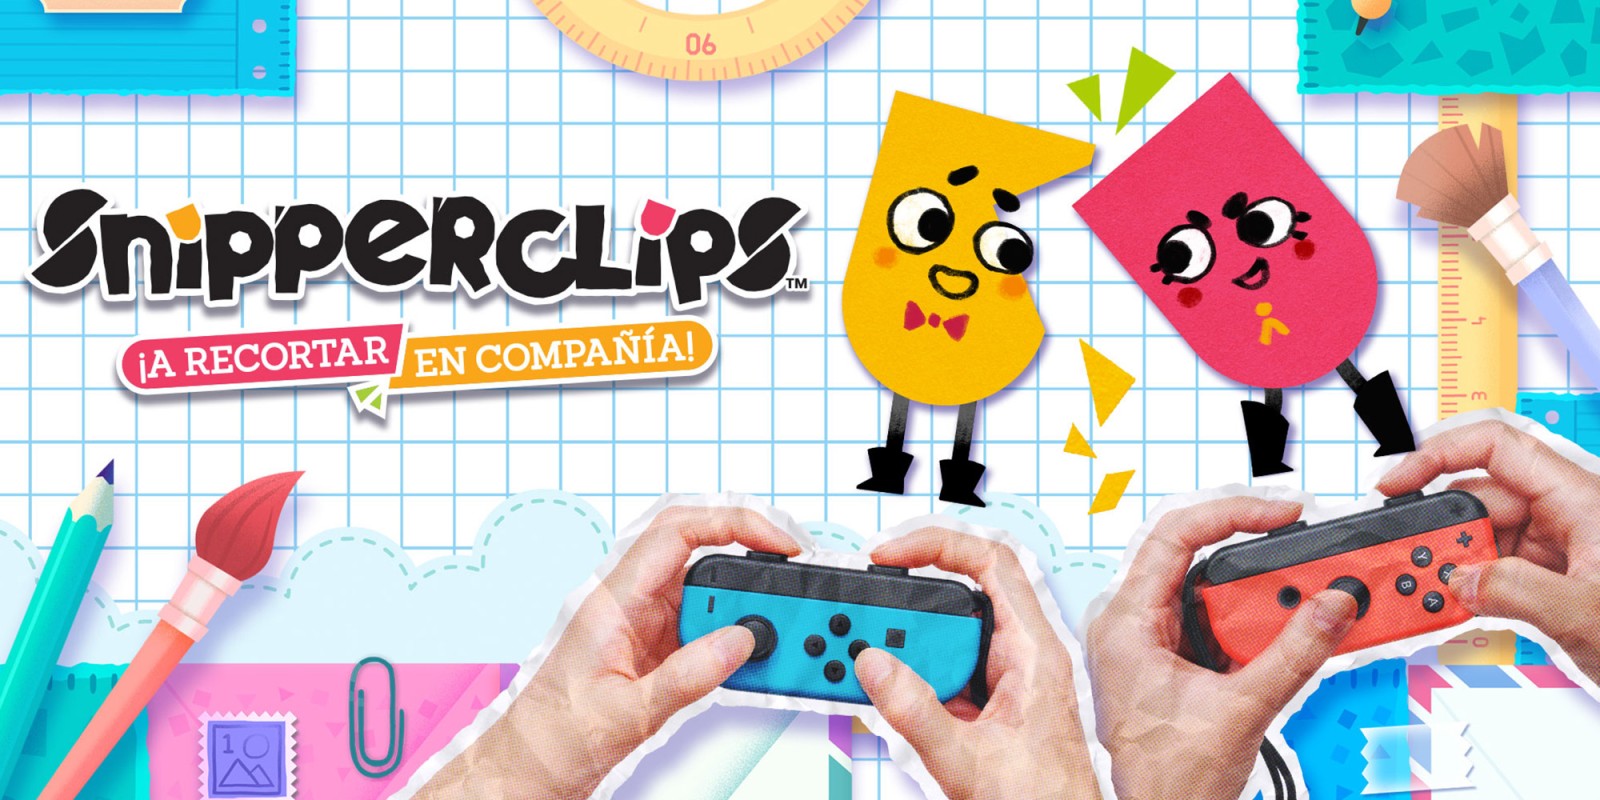 Snipperclips A Recortar En Compania Programas Descargables Nintendo Switch Juegos Nintendo